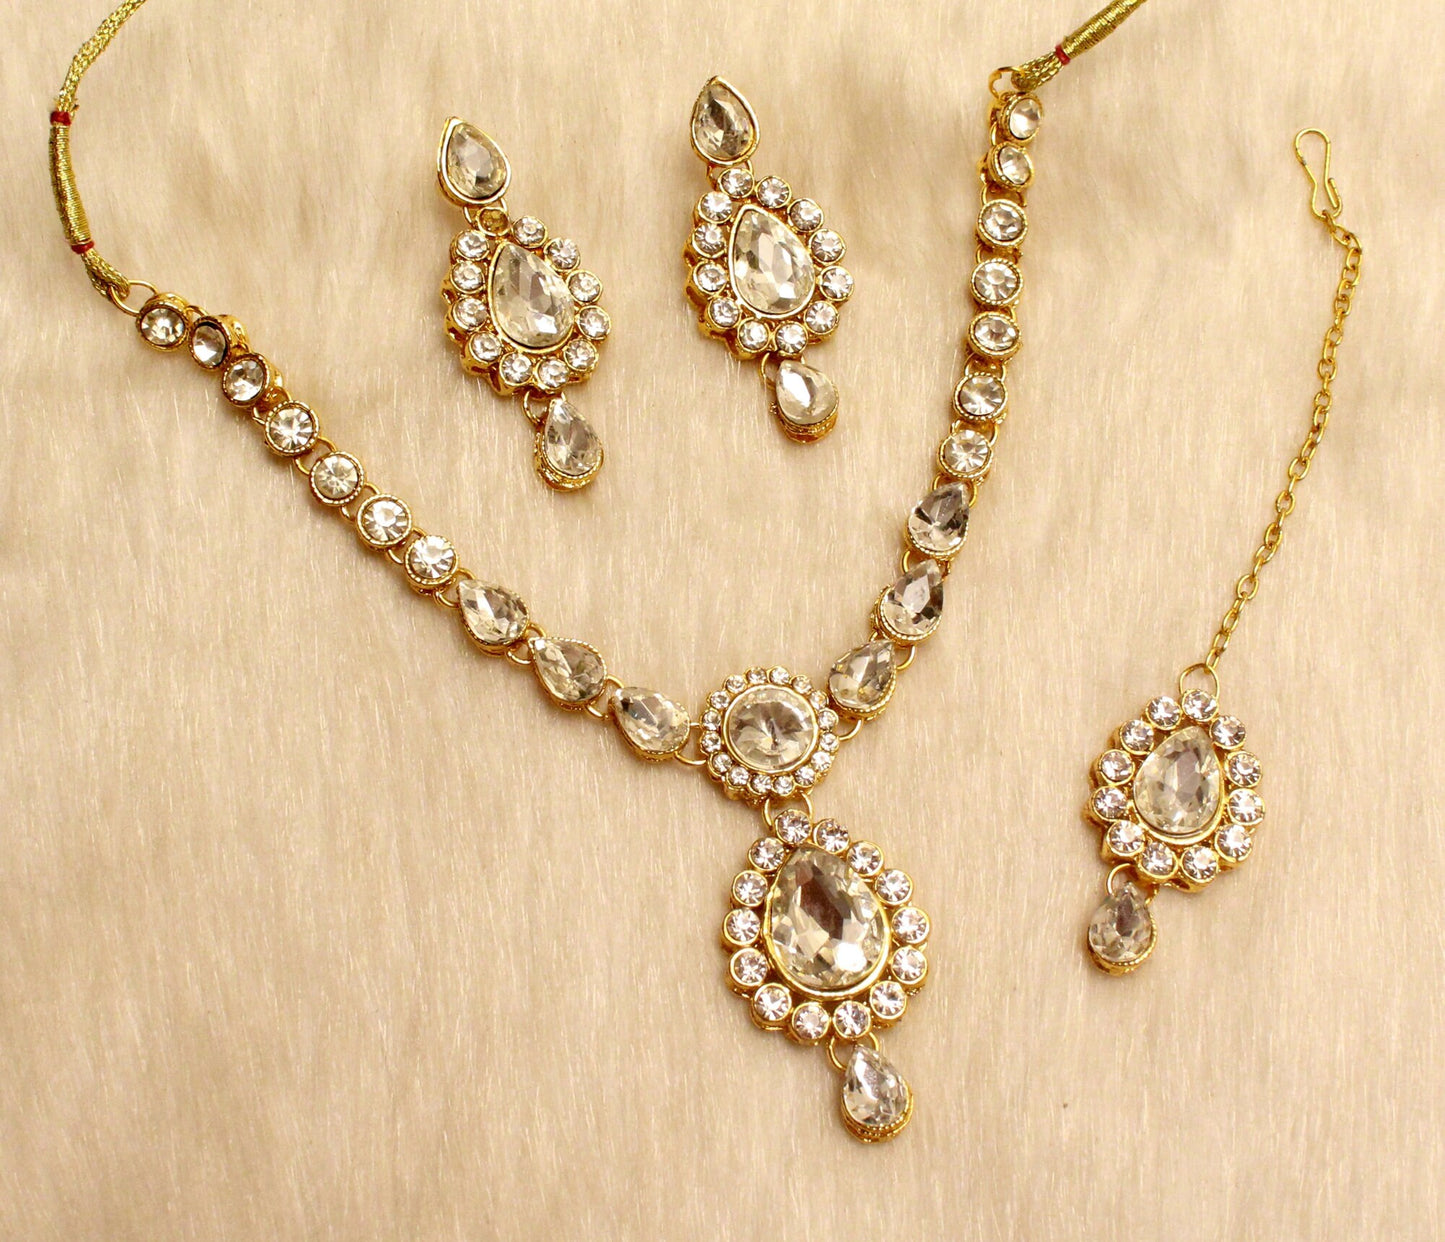 Gold Kundan Halskette Set/Gold/Silber/Firoji/rot Indische Hochzeit Braut Ethno Schmuck HalsketteSet/Indischer Schmuck Kundan Sets